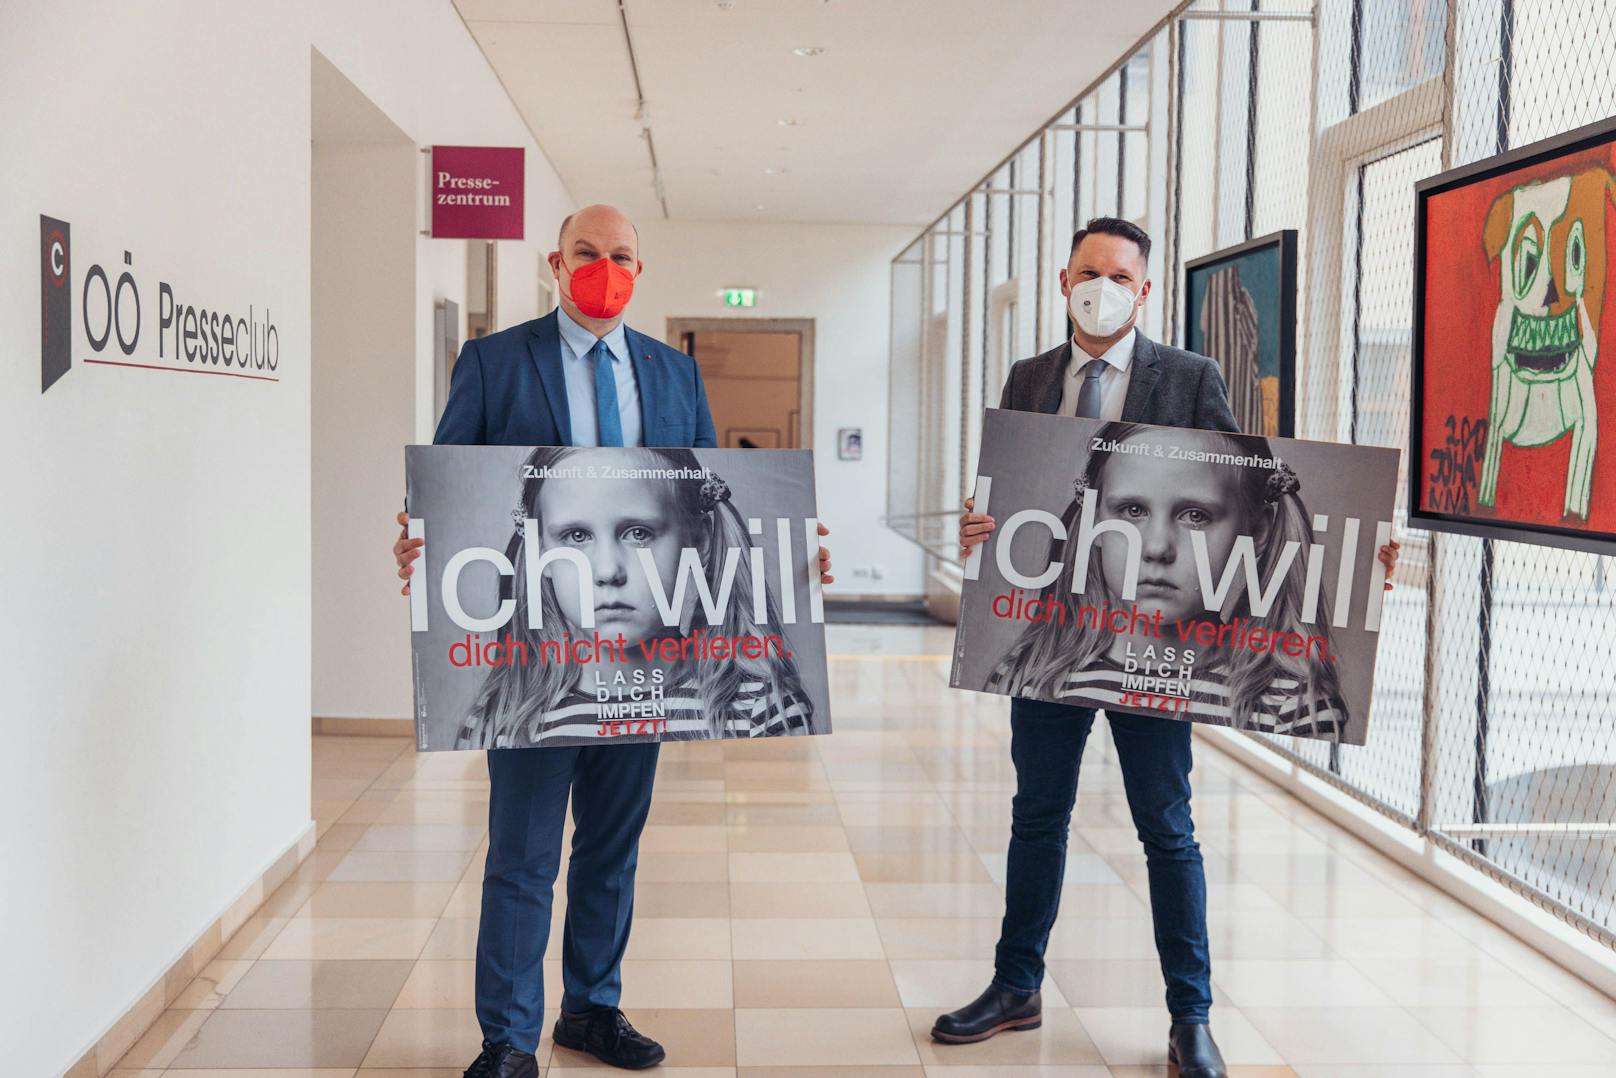 SP-Gesundheitssprecher Peter Binder und LGF Georg Brockmeyer mit den Plakaten, die nun Rücktrittsforderungen nach sich ziehen.